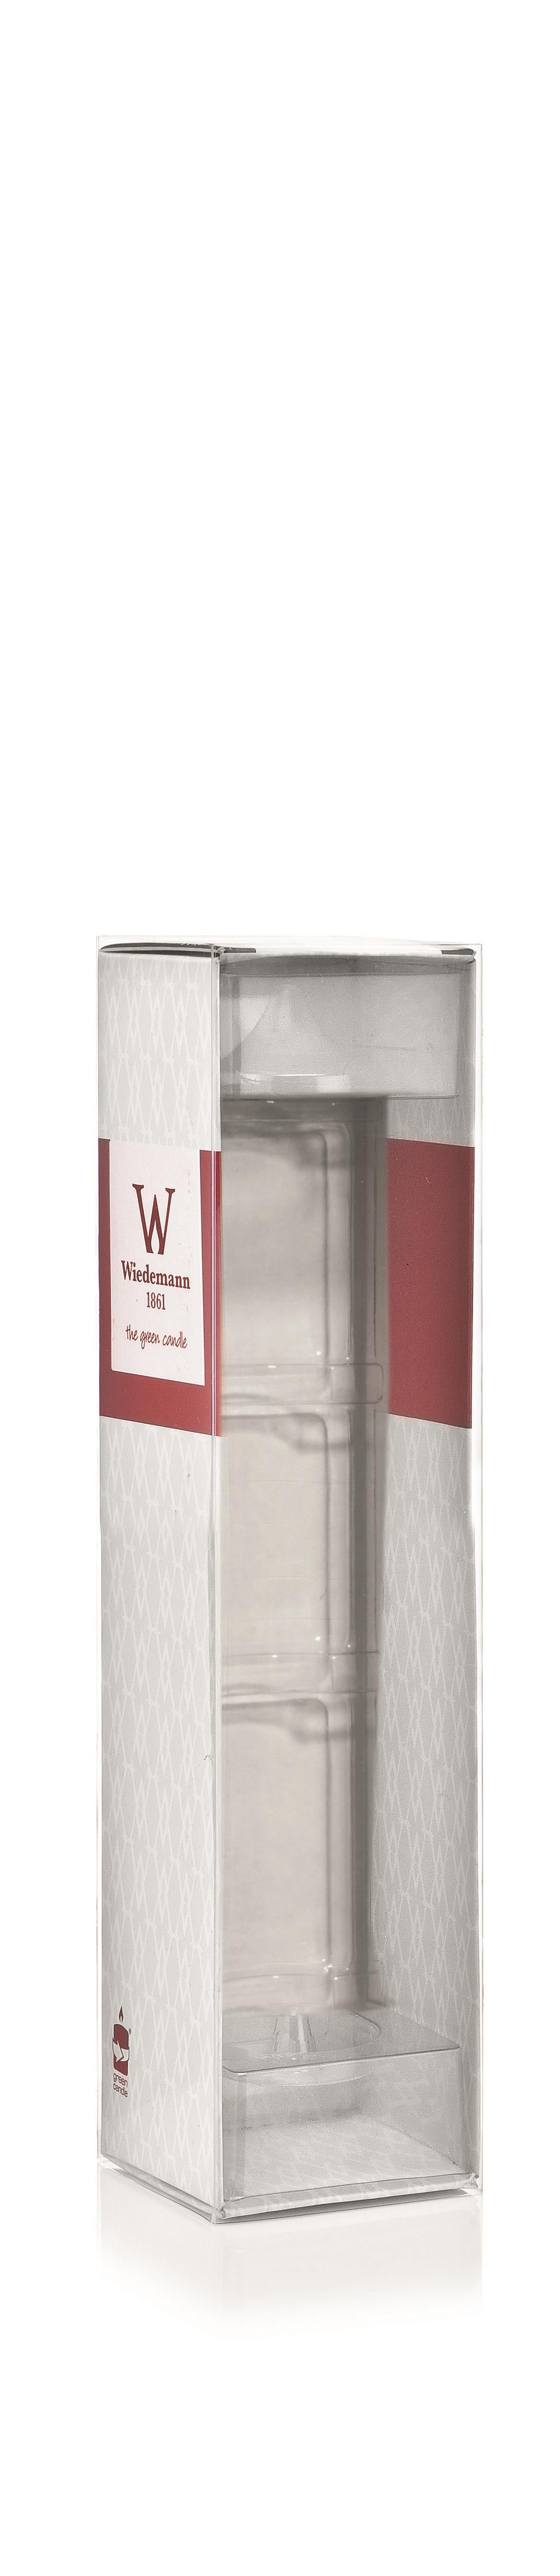 Verpackung mit PVC Einsatz passend für Kerzen 265/50 (Weiß)